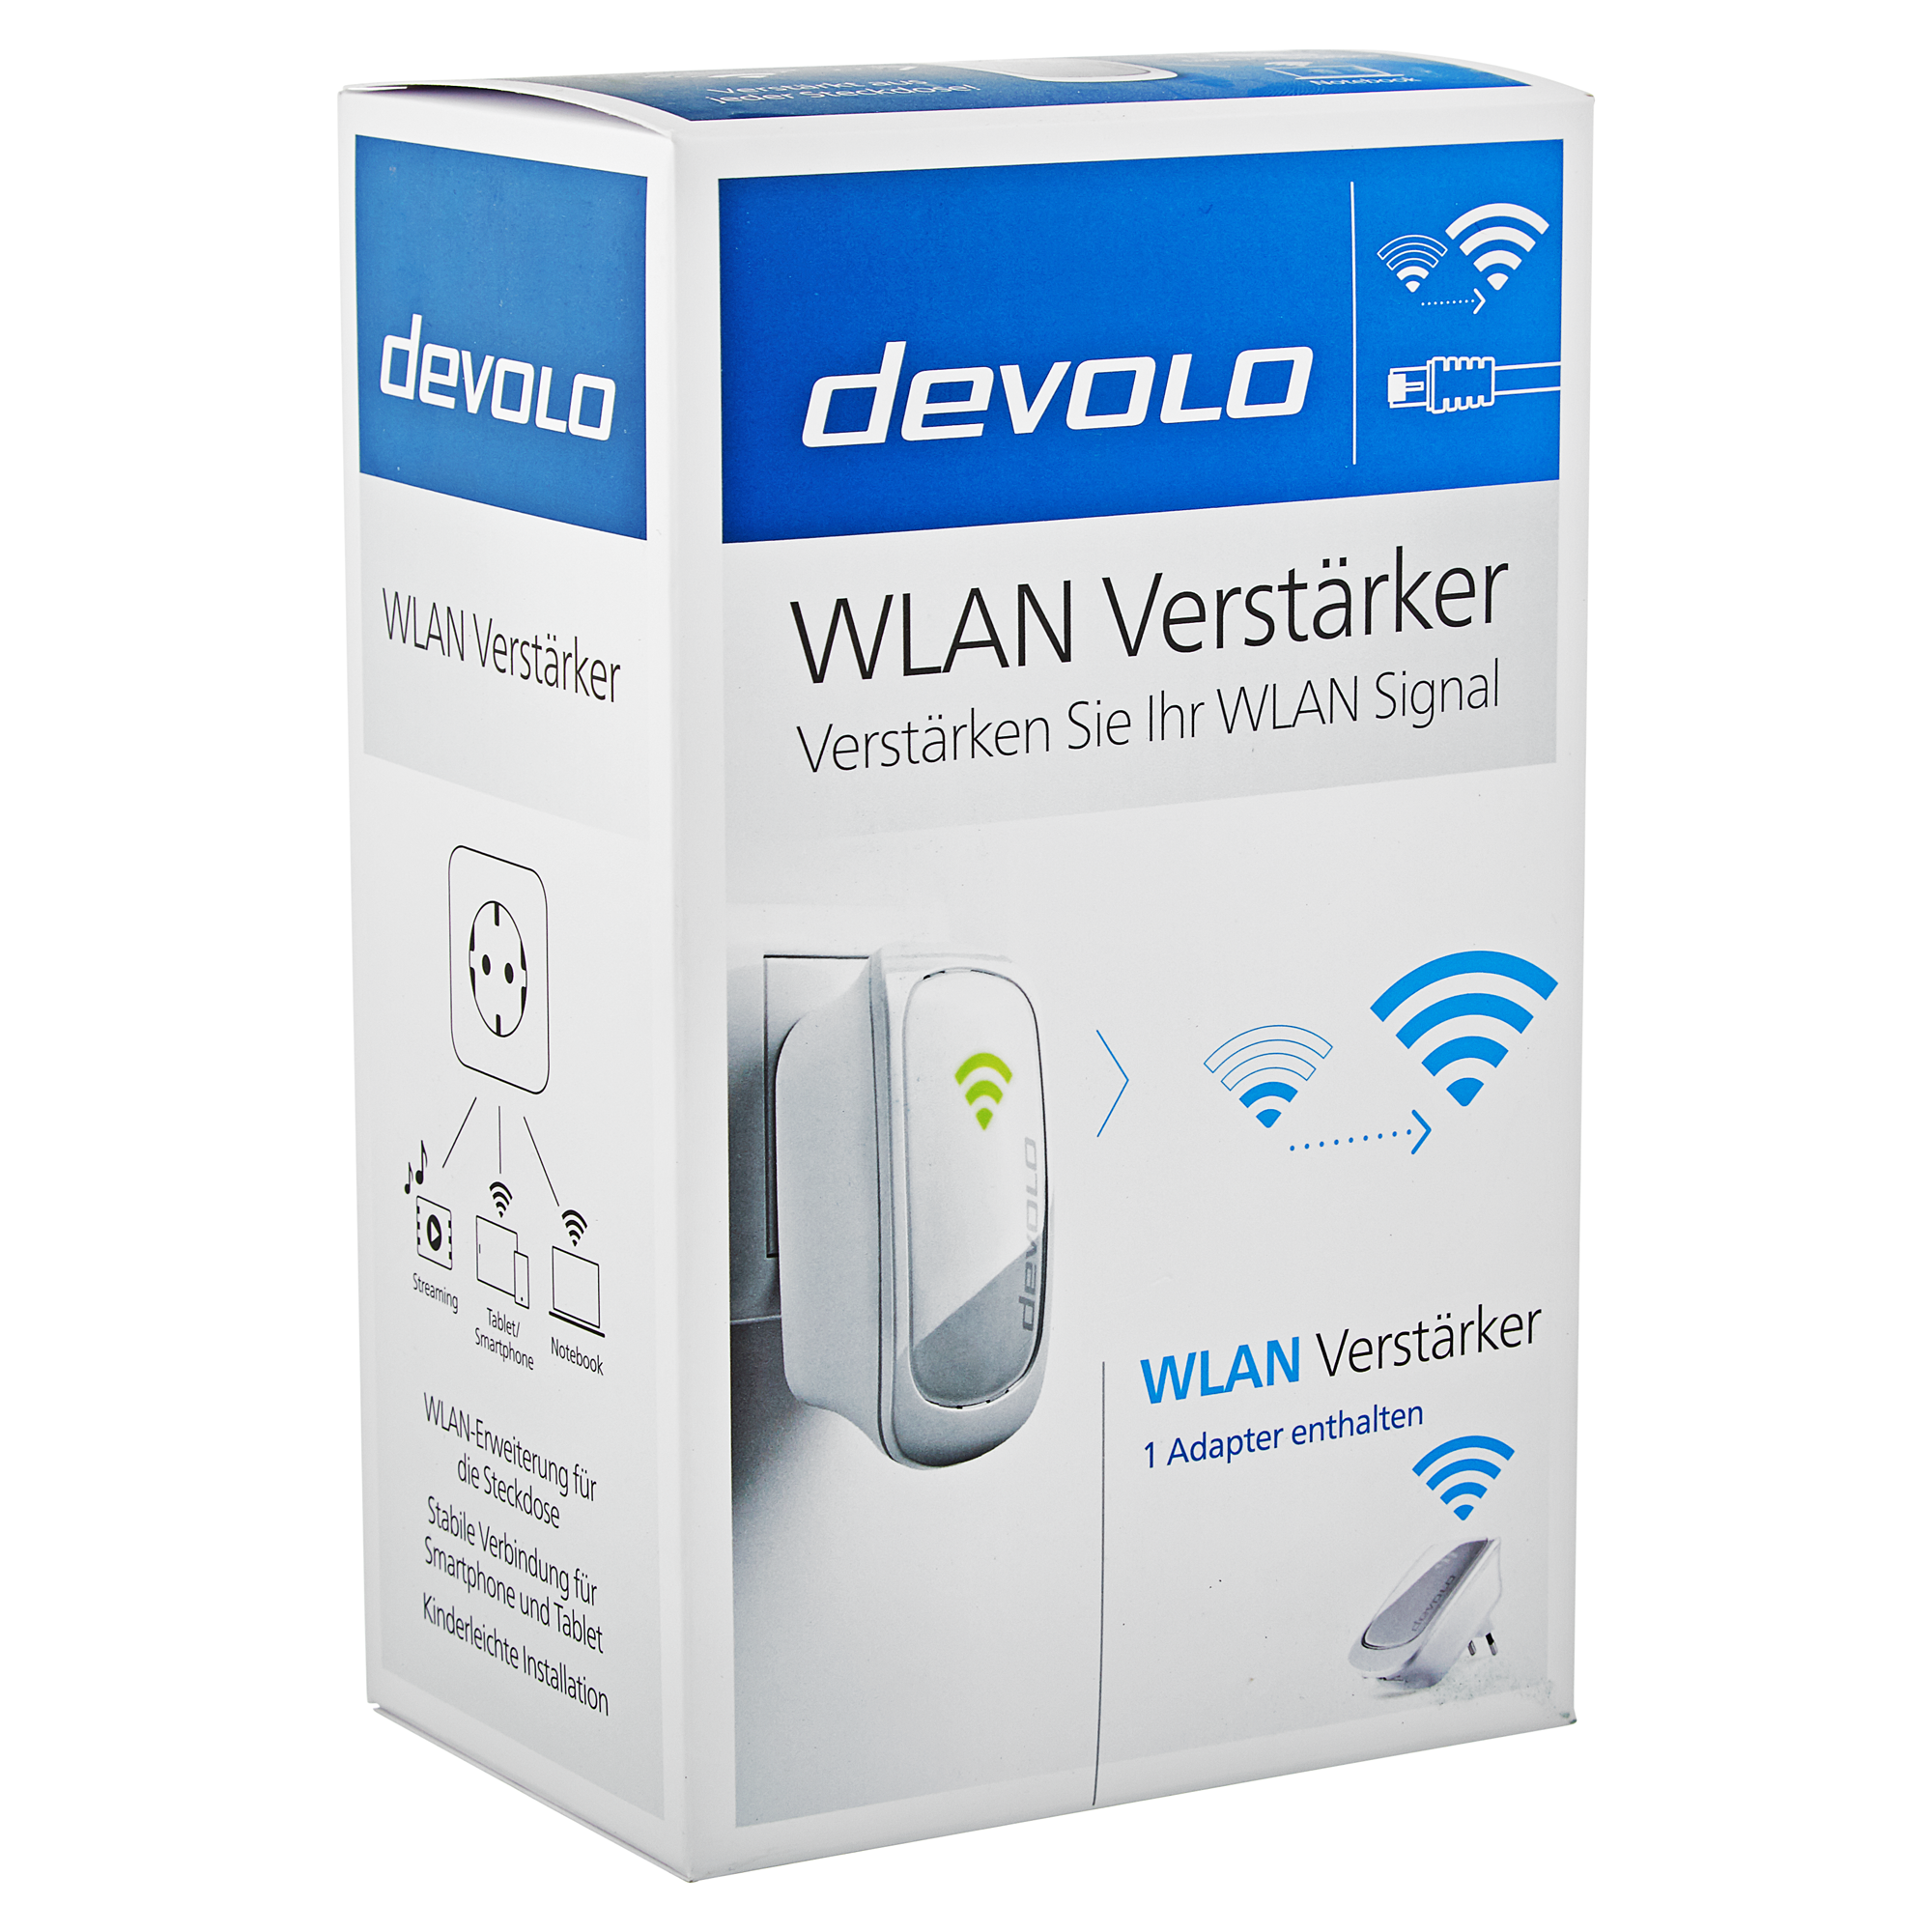 WLAN-Verstärker 300 Mbit/s + product picture